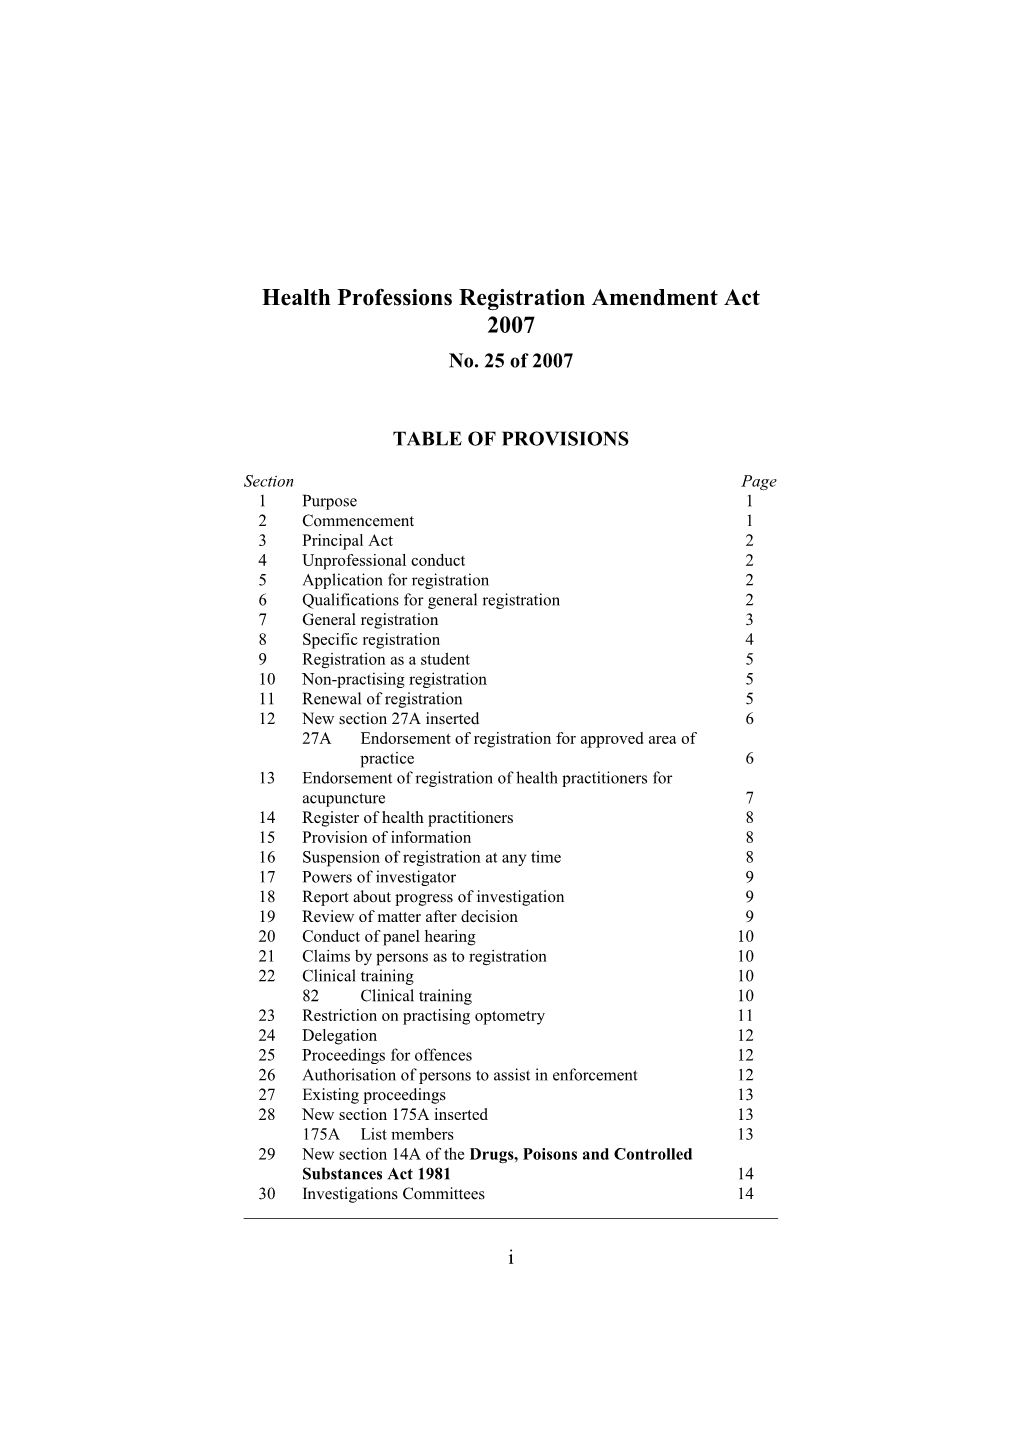 Health Professions Registration Amendment Act 2007